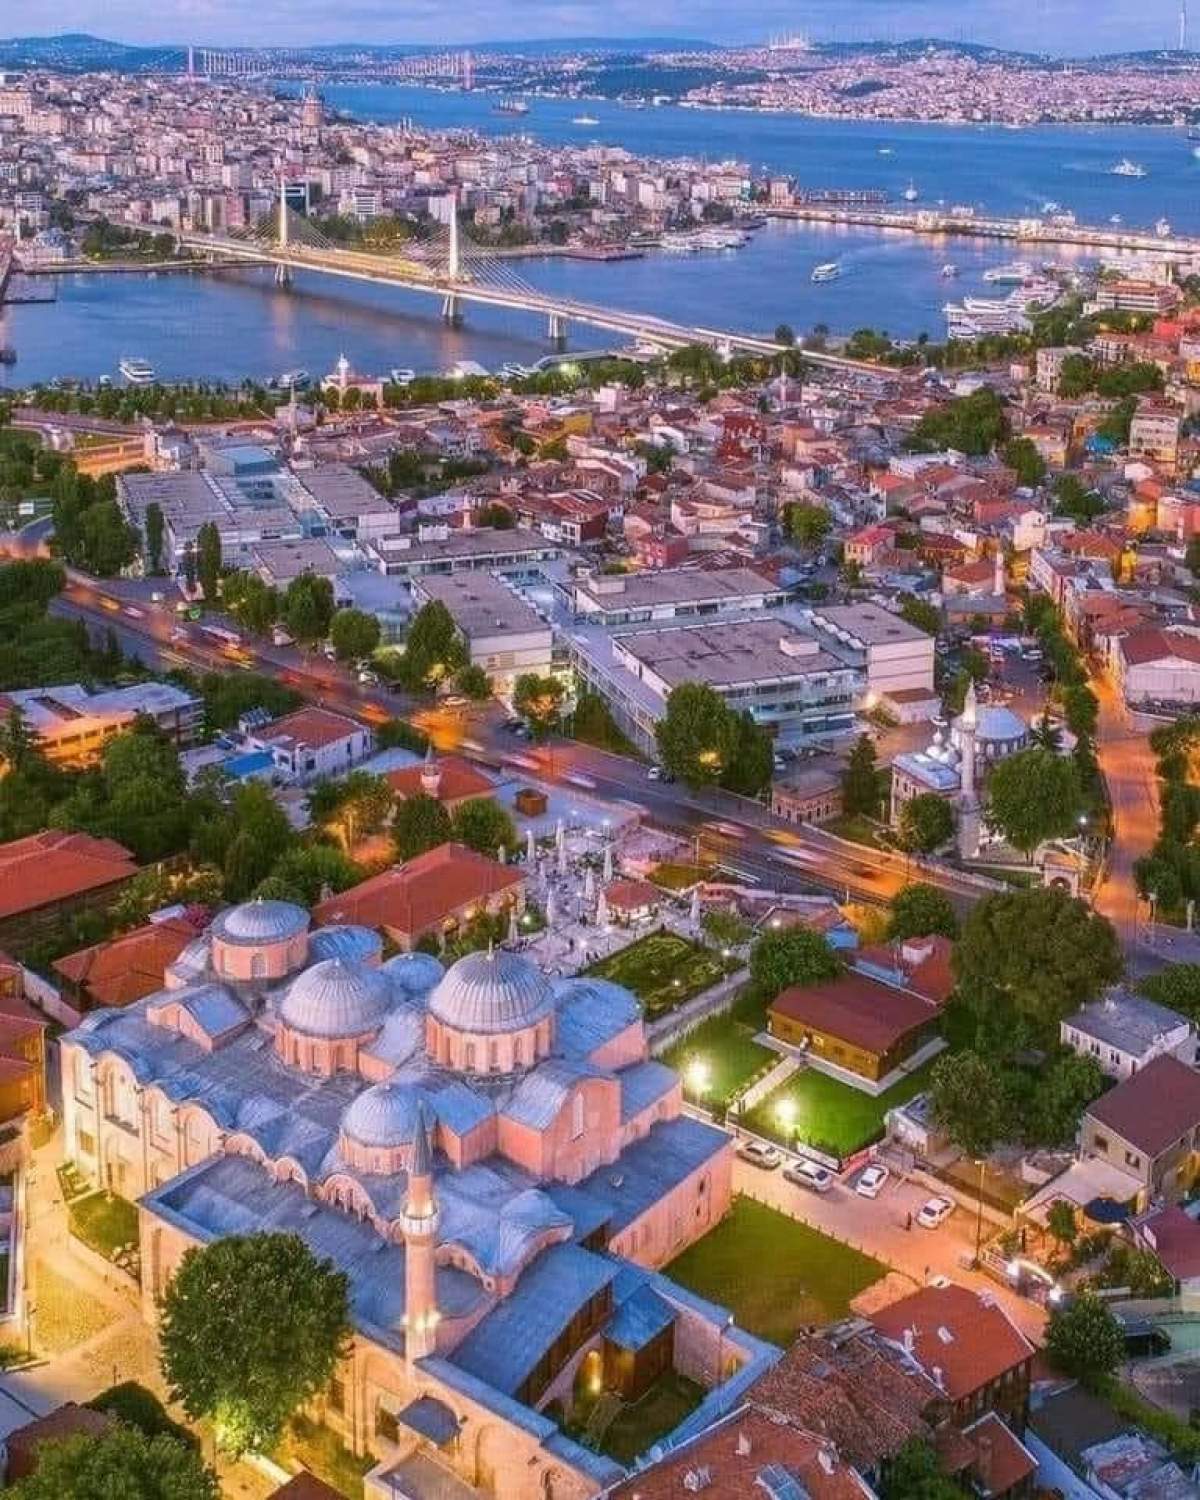 Cât costă o vacanță în Istanbul, Turcia. Ce sumă trebuie să plătești ca să te distrezi aici